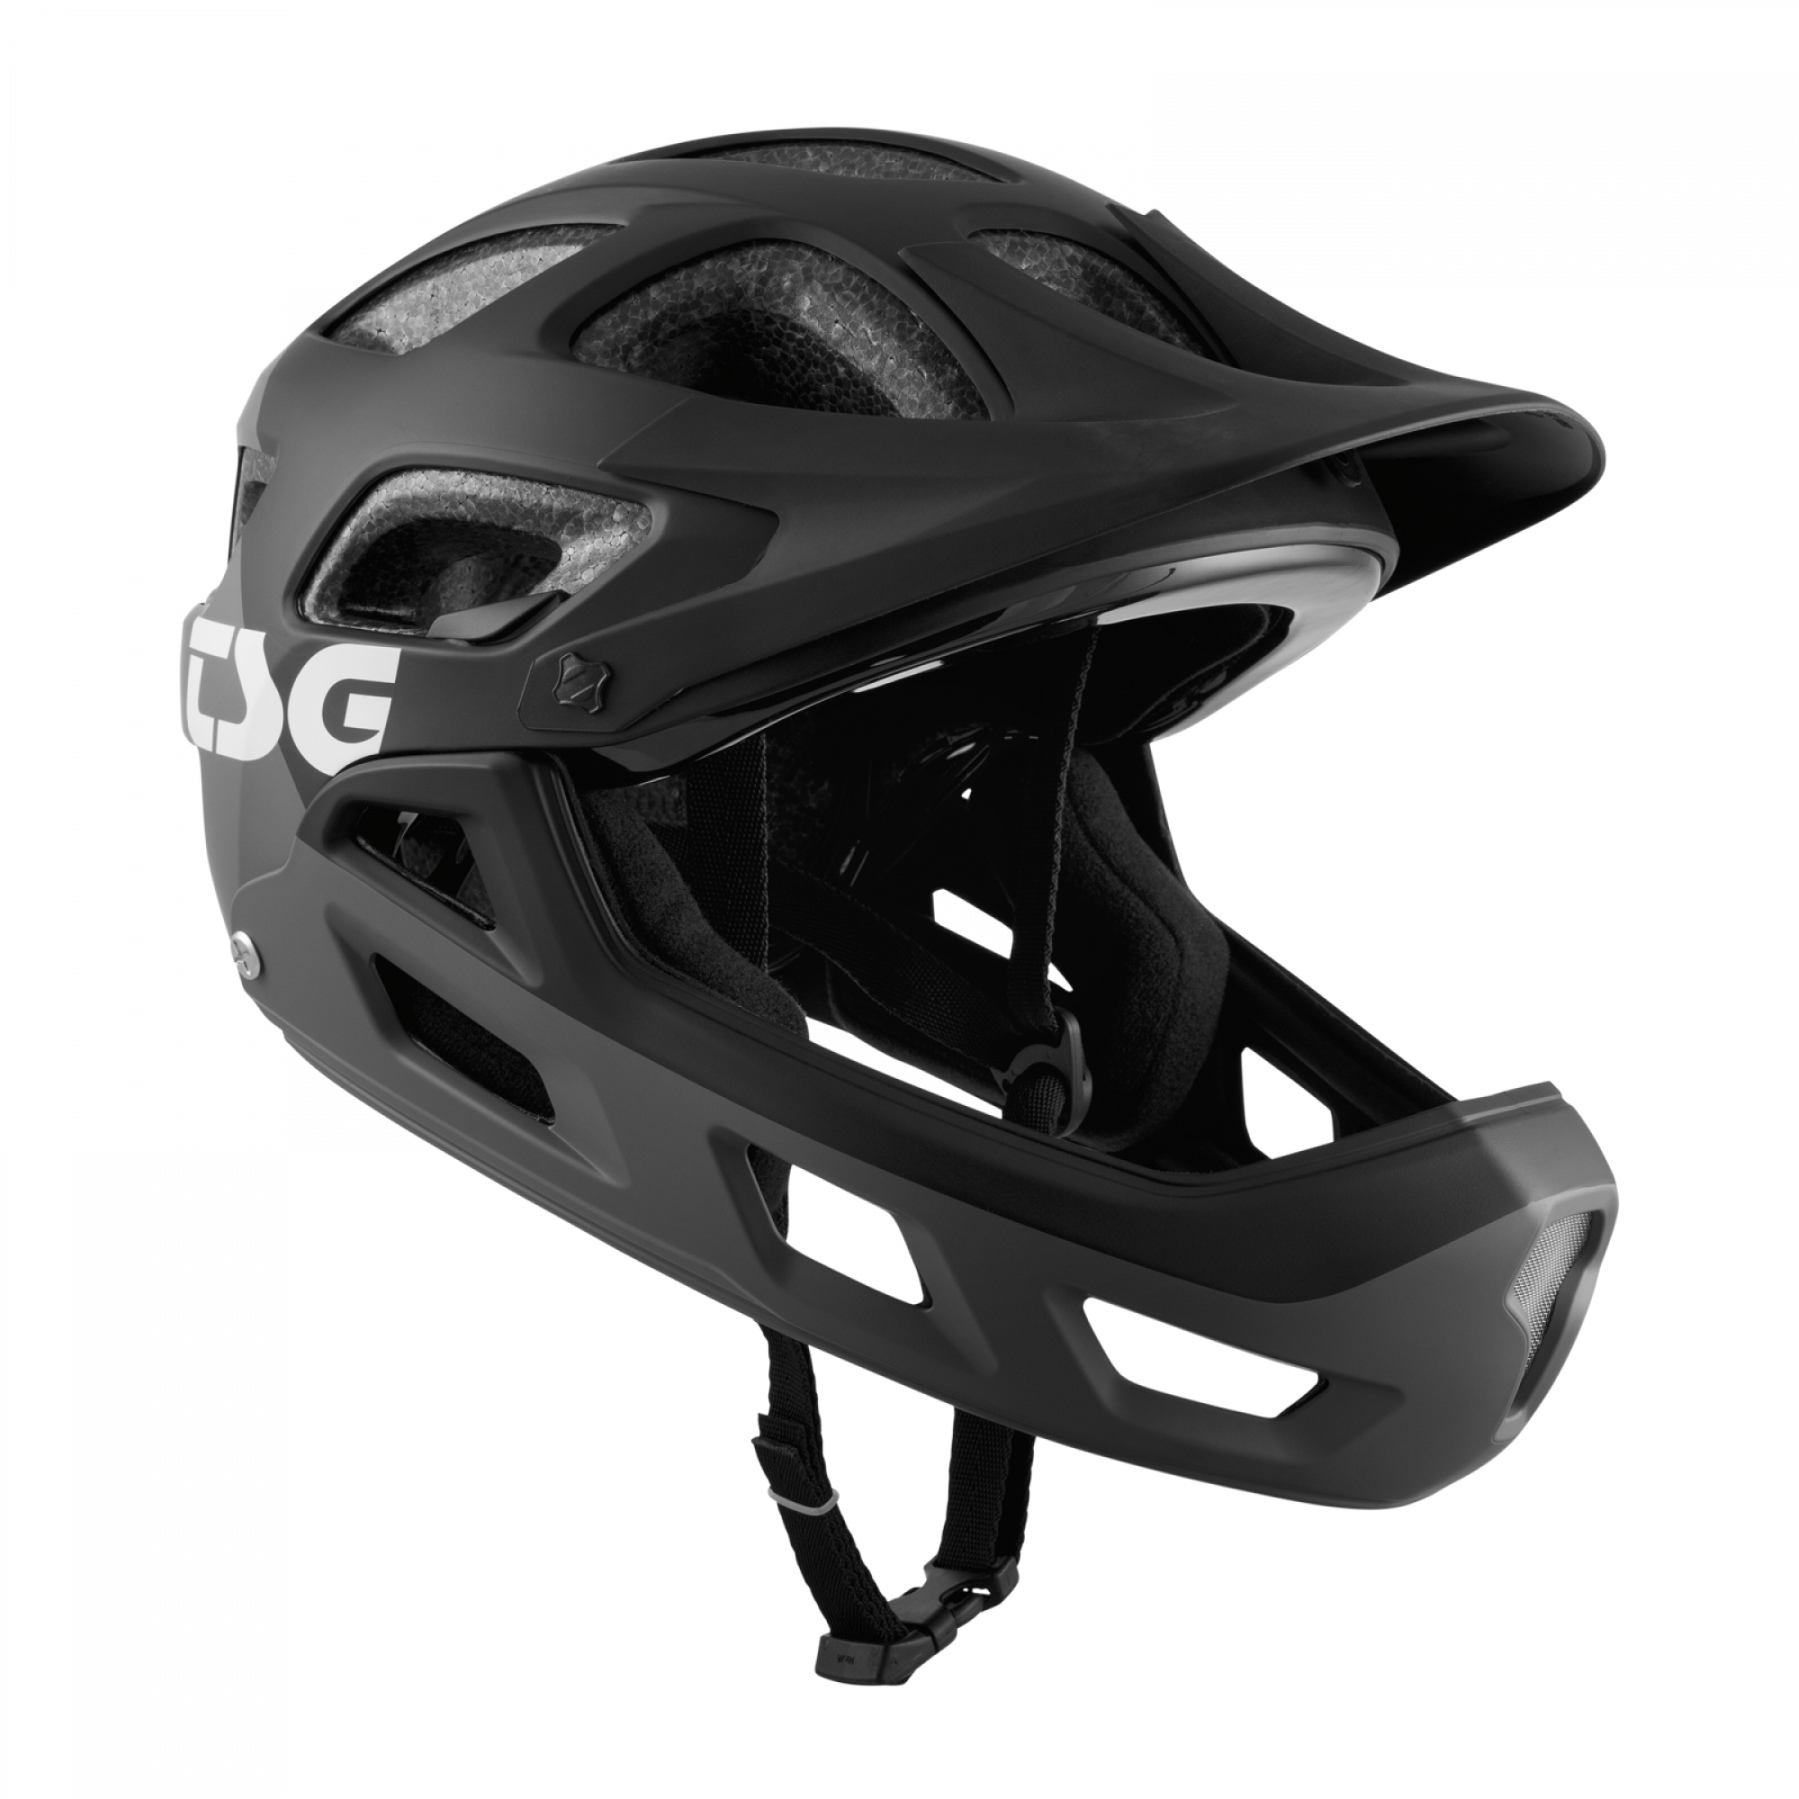 Productfoto van TSG Seek FR Graphic Design Helmet - flow grey-black